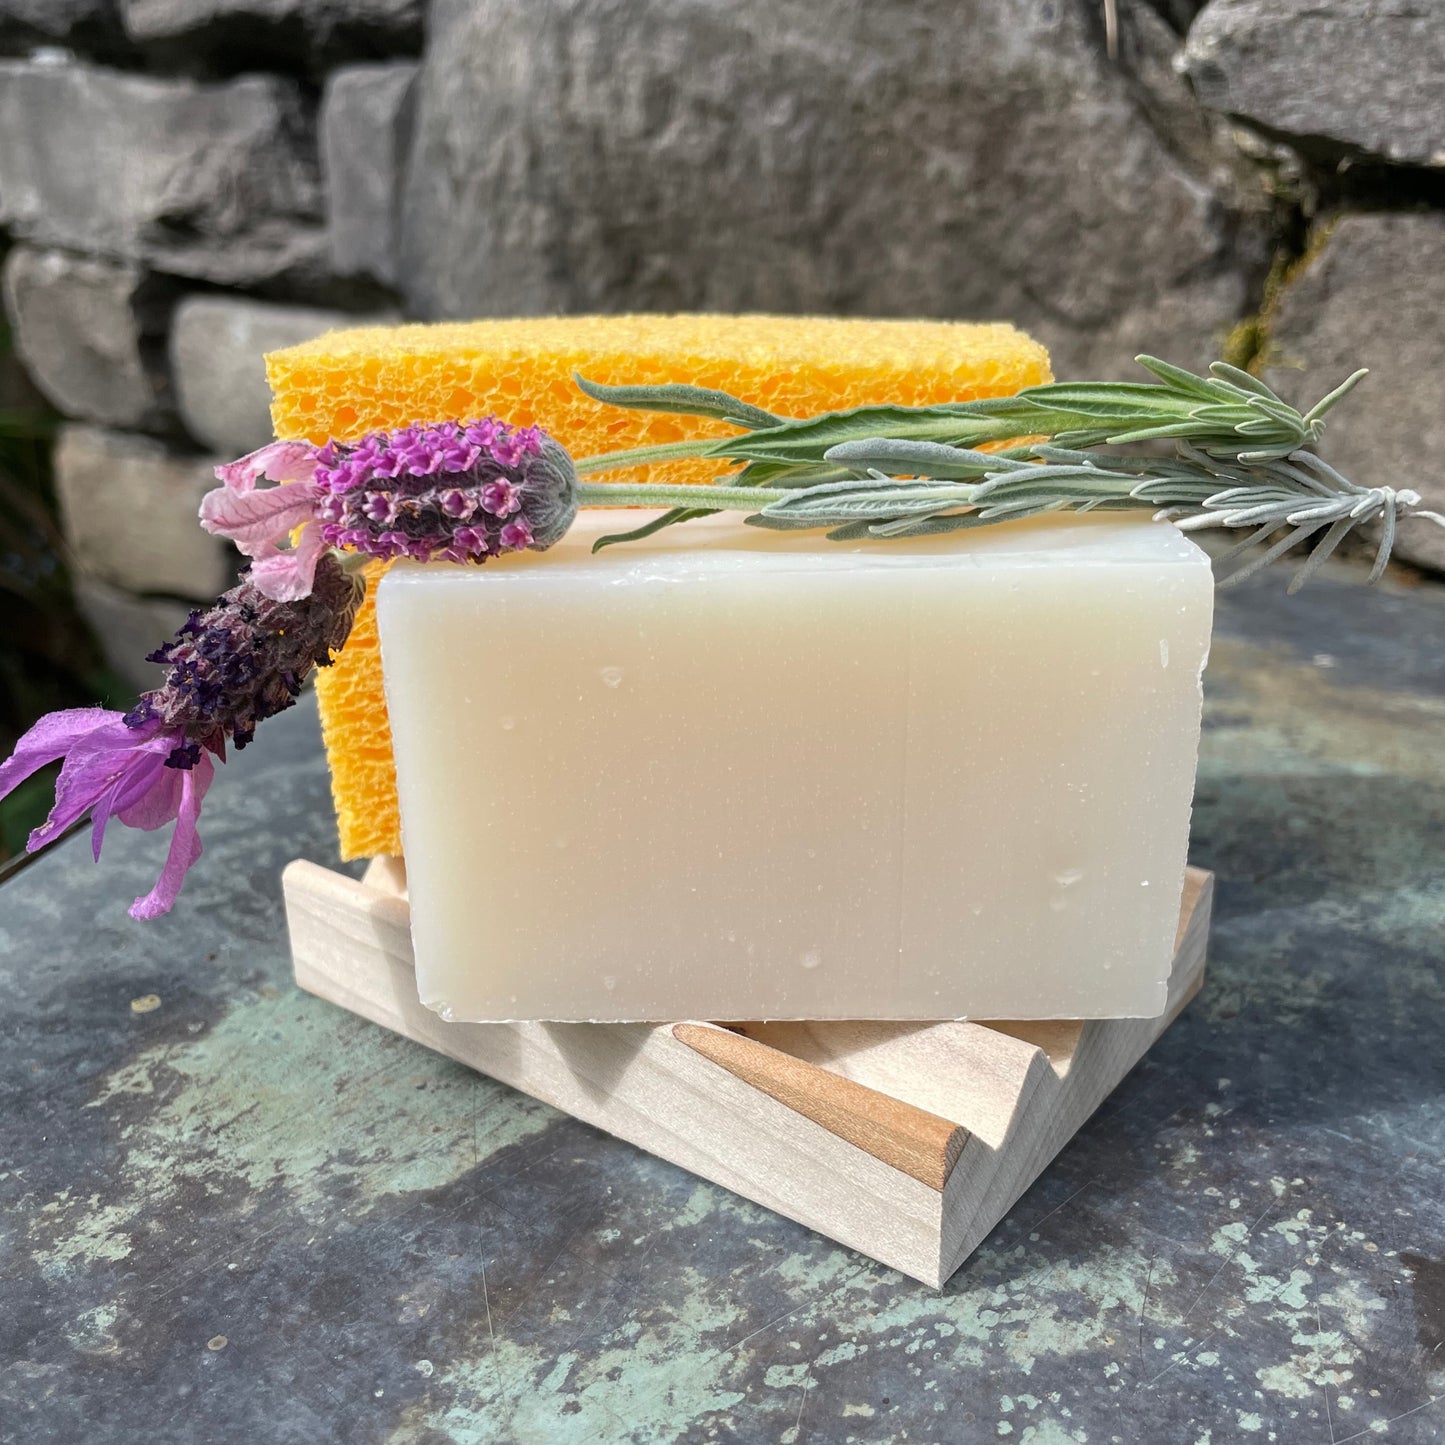 Floral Soap Bundle - Pack of 6 Natural Soap Bars